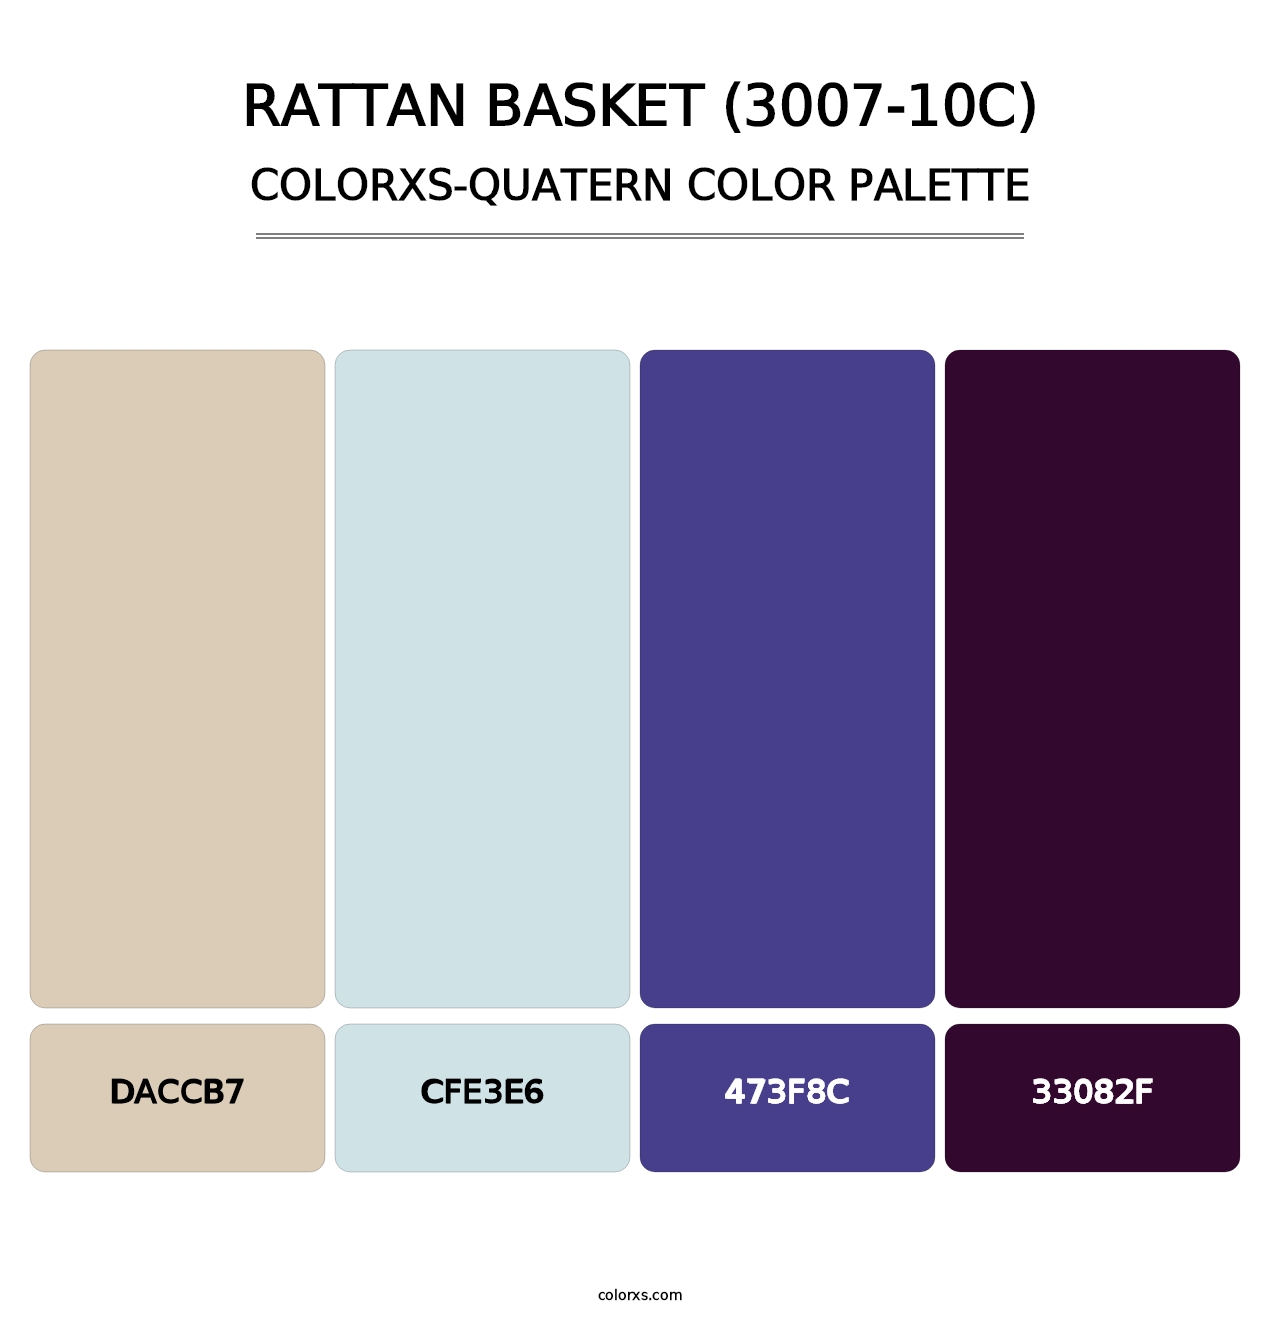 Rattan Basket (3007-10C) - Colorxs Quatern Palette